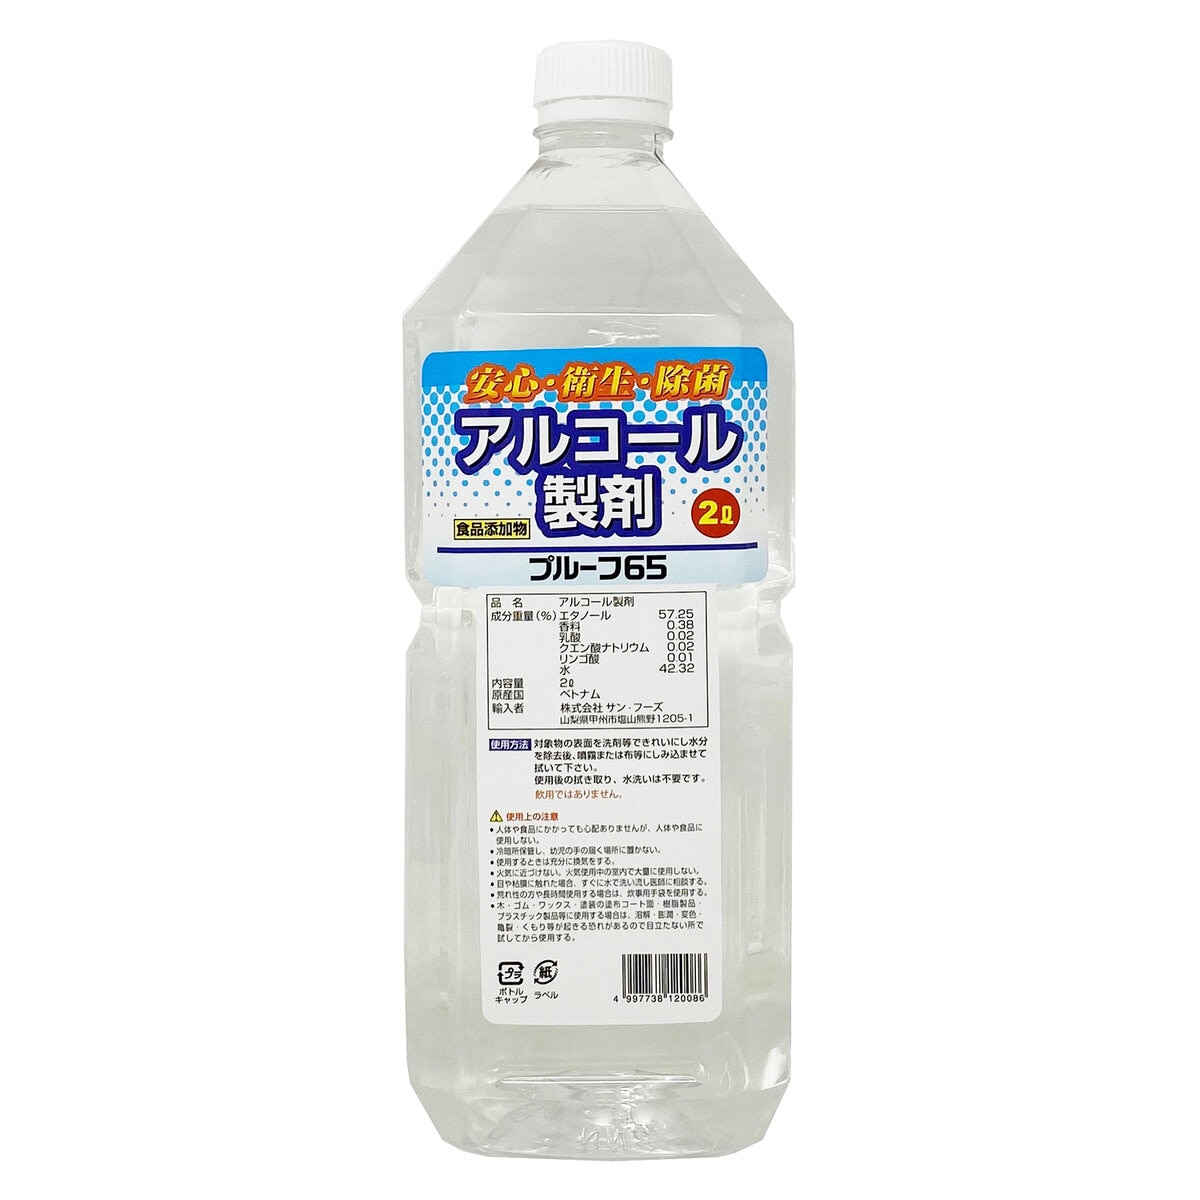 アルコール製剤プルーフ65 2000mL | Costco Japan